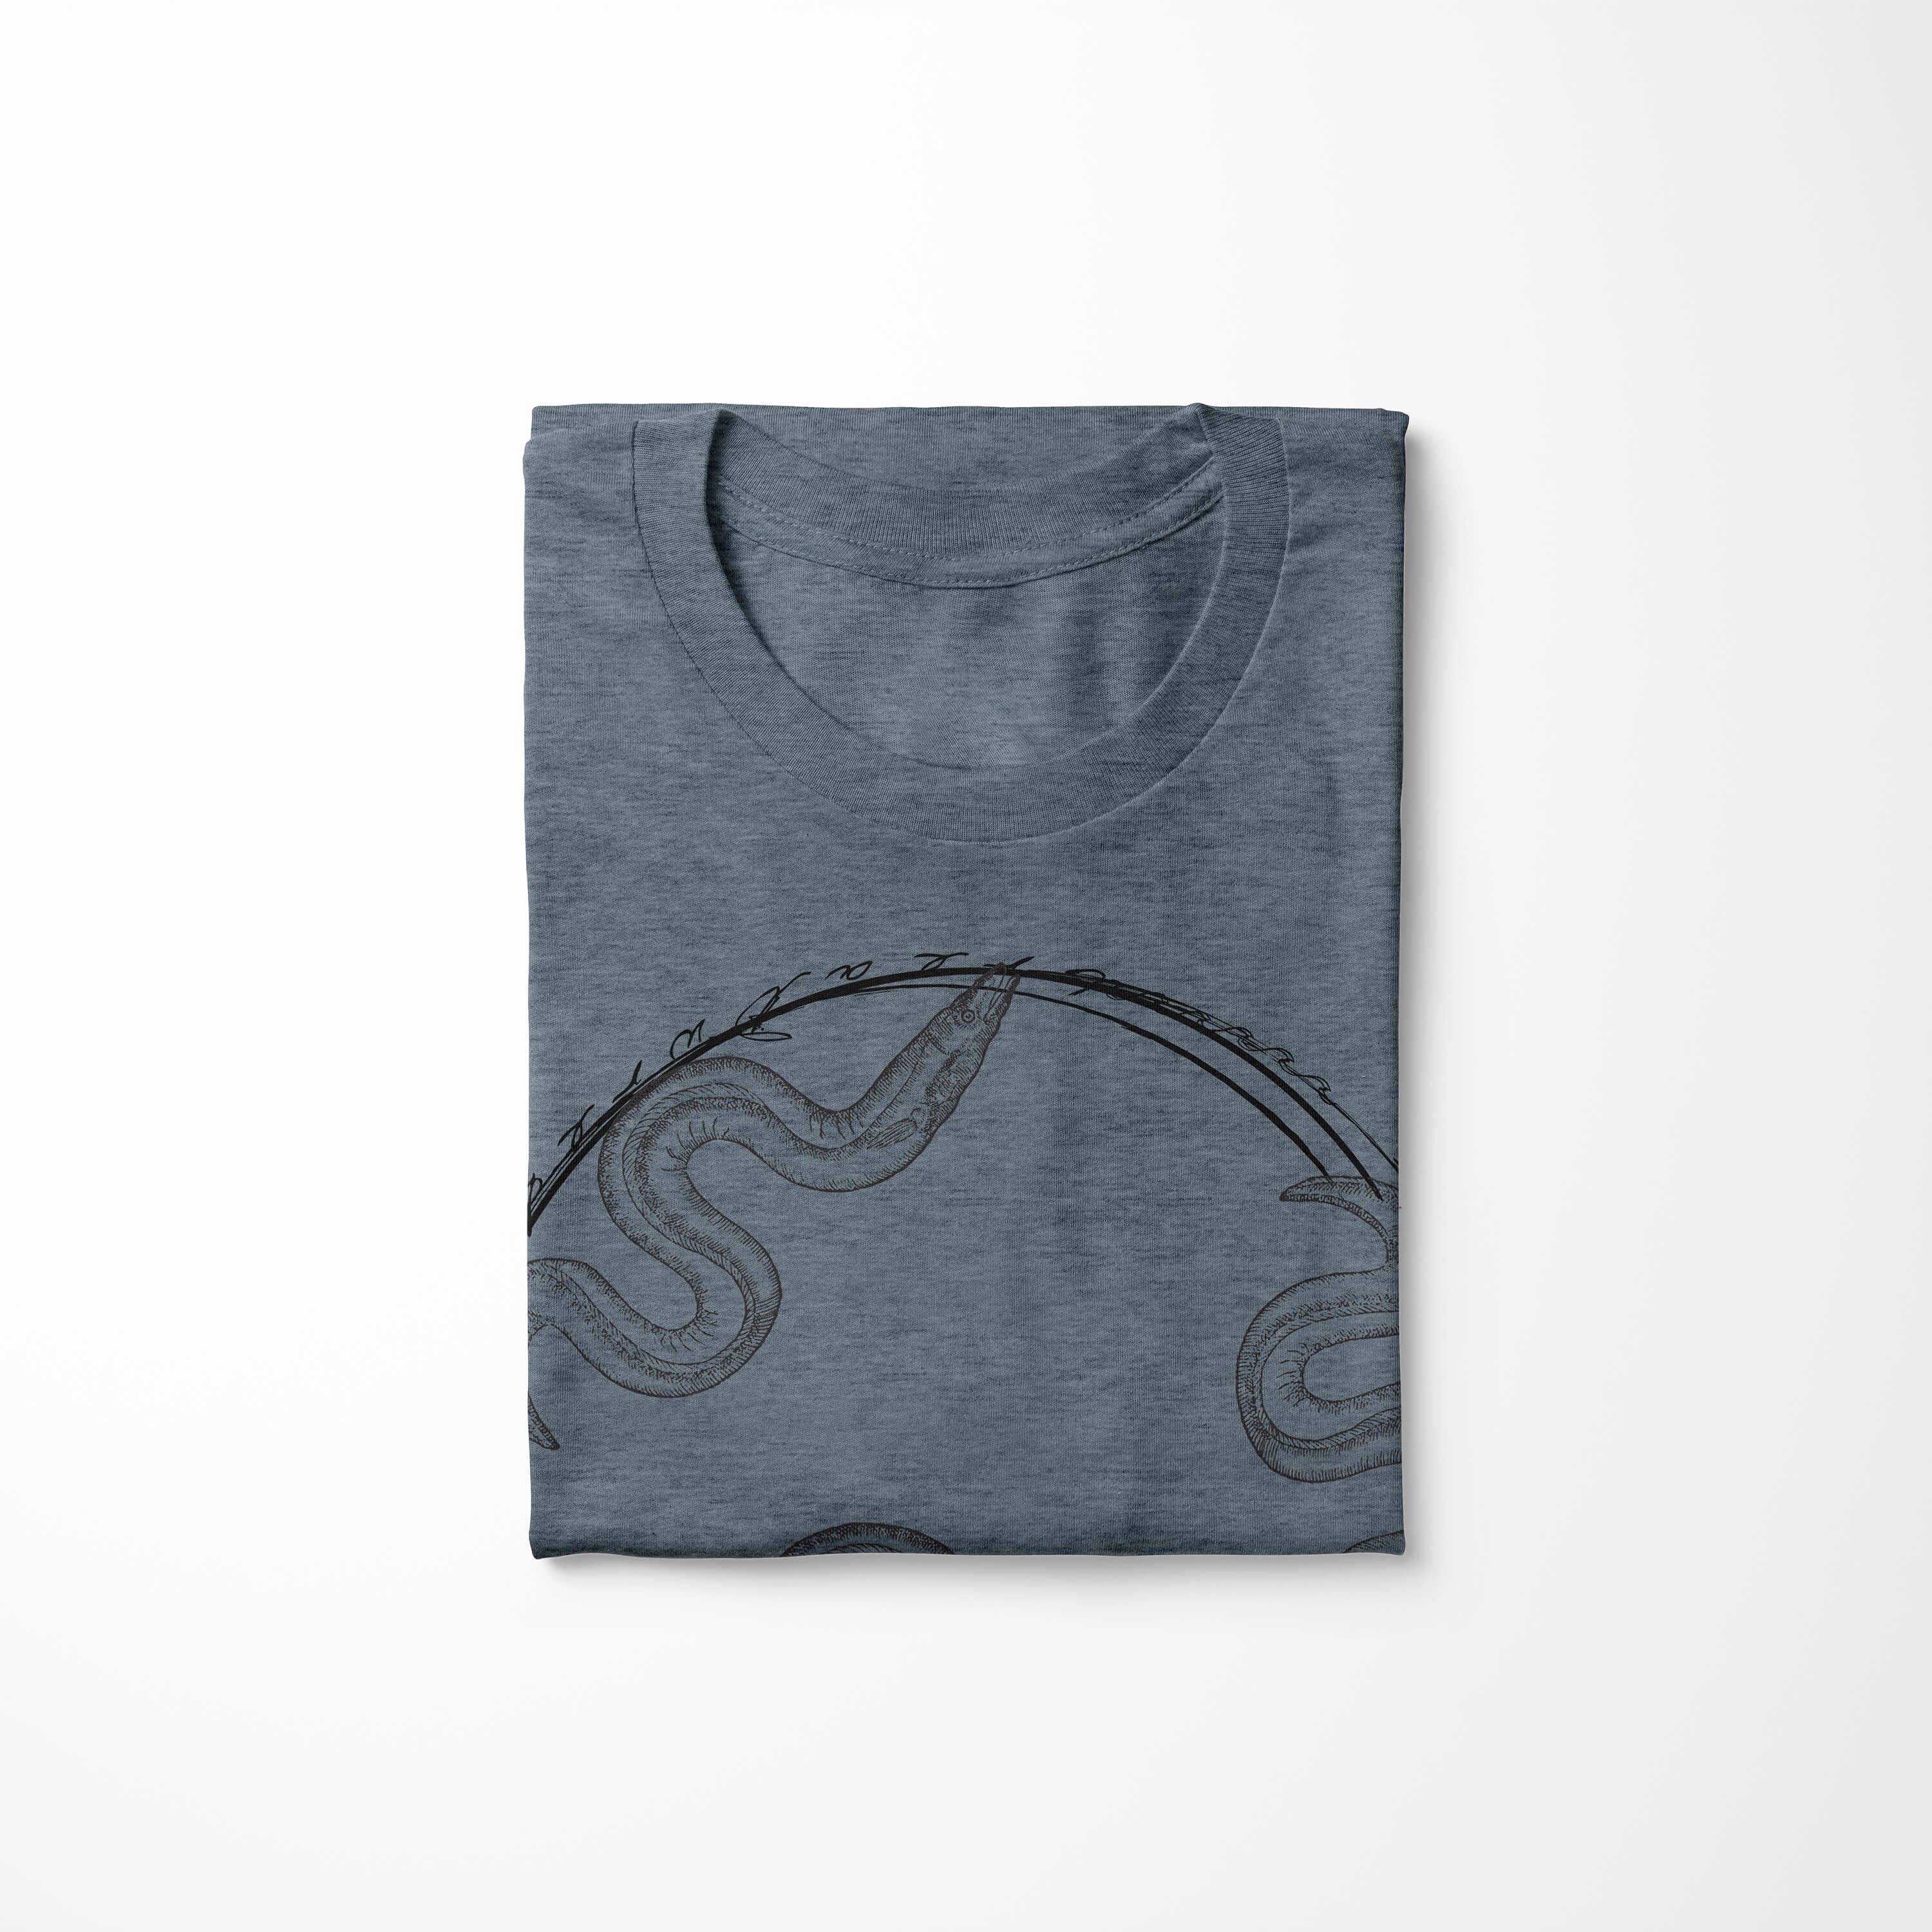 T-Shirt Serie: Fische Sea Schnitt und sportlicher Tiefsee Creatures, Art 093 T-Shirt feine - / Sea Sinus Indigo Struktur